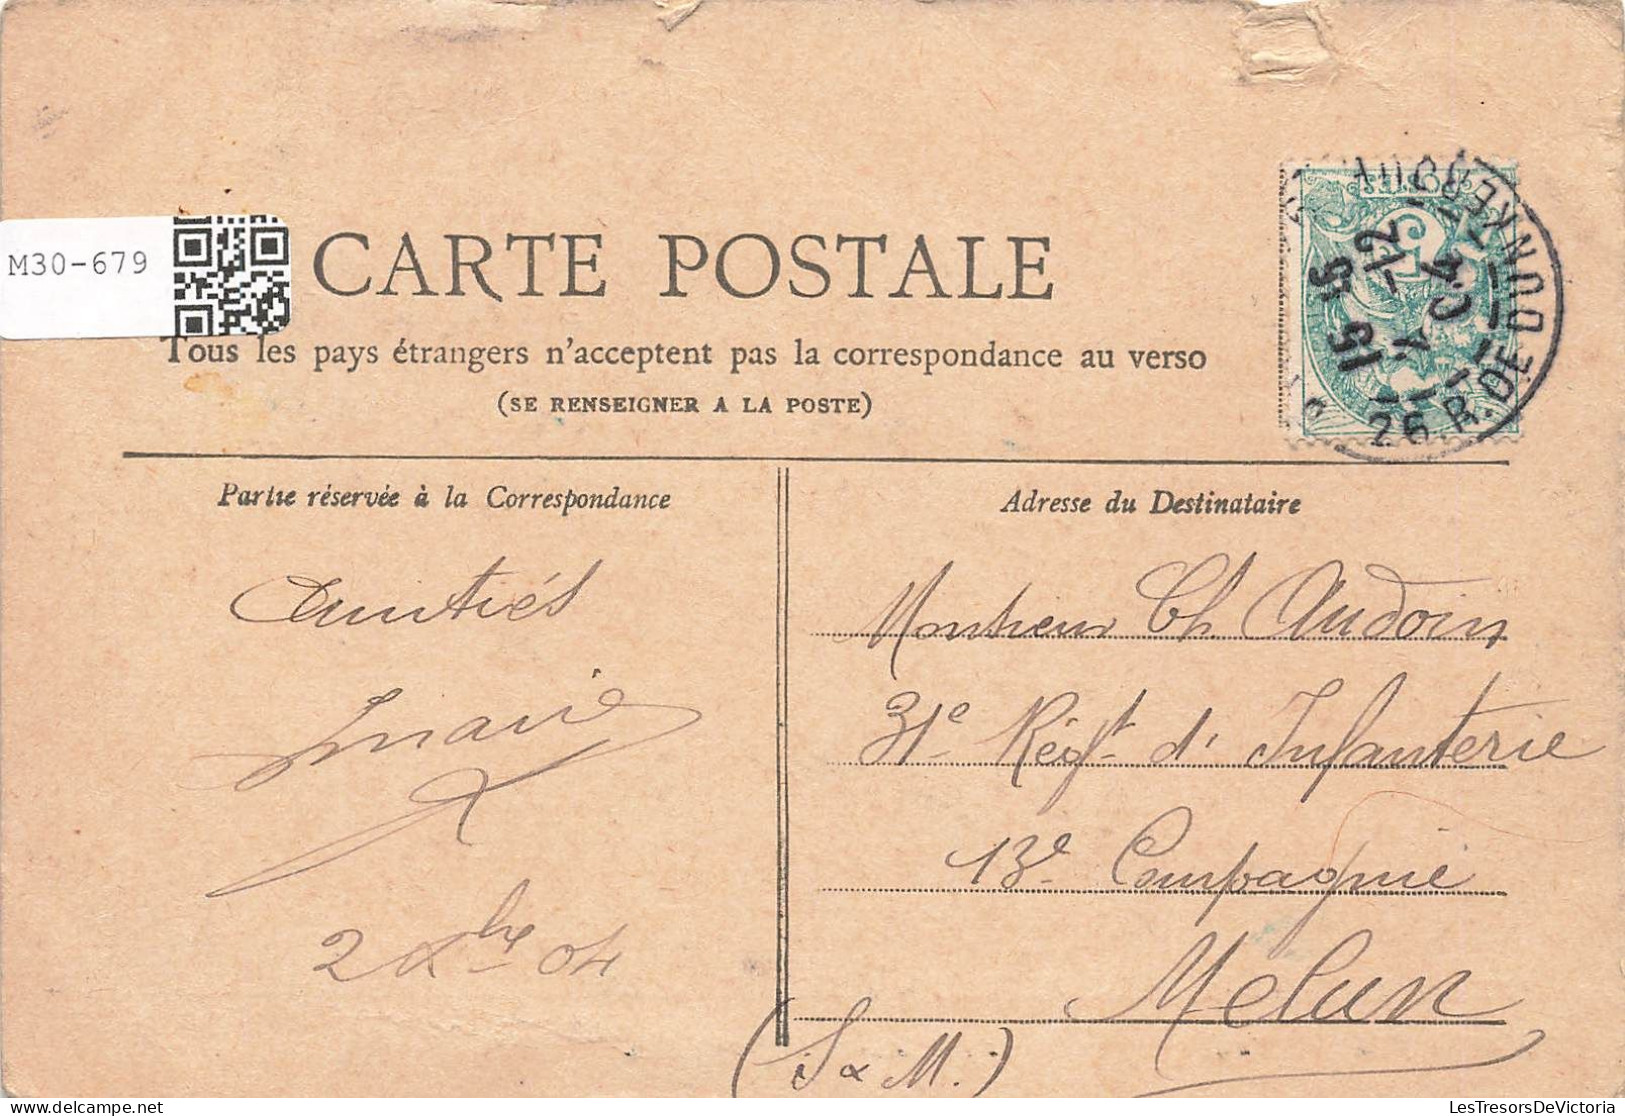 FRANCE - Paris - Vue Sur Le Trocadéro - Collection Petit Journal - Carte Postale Ancienne - Other Monuments